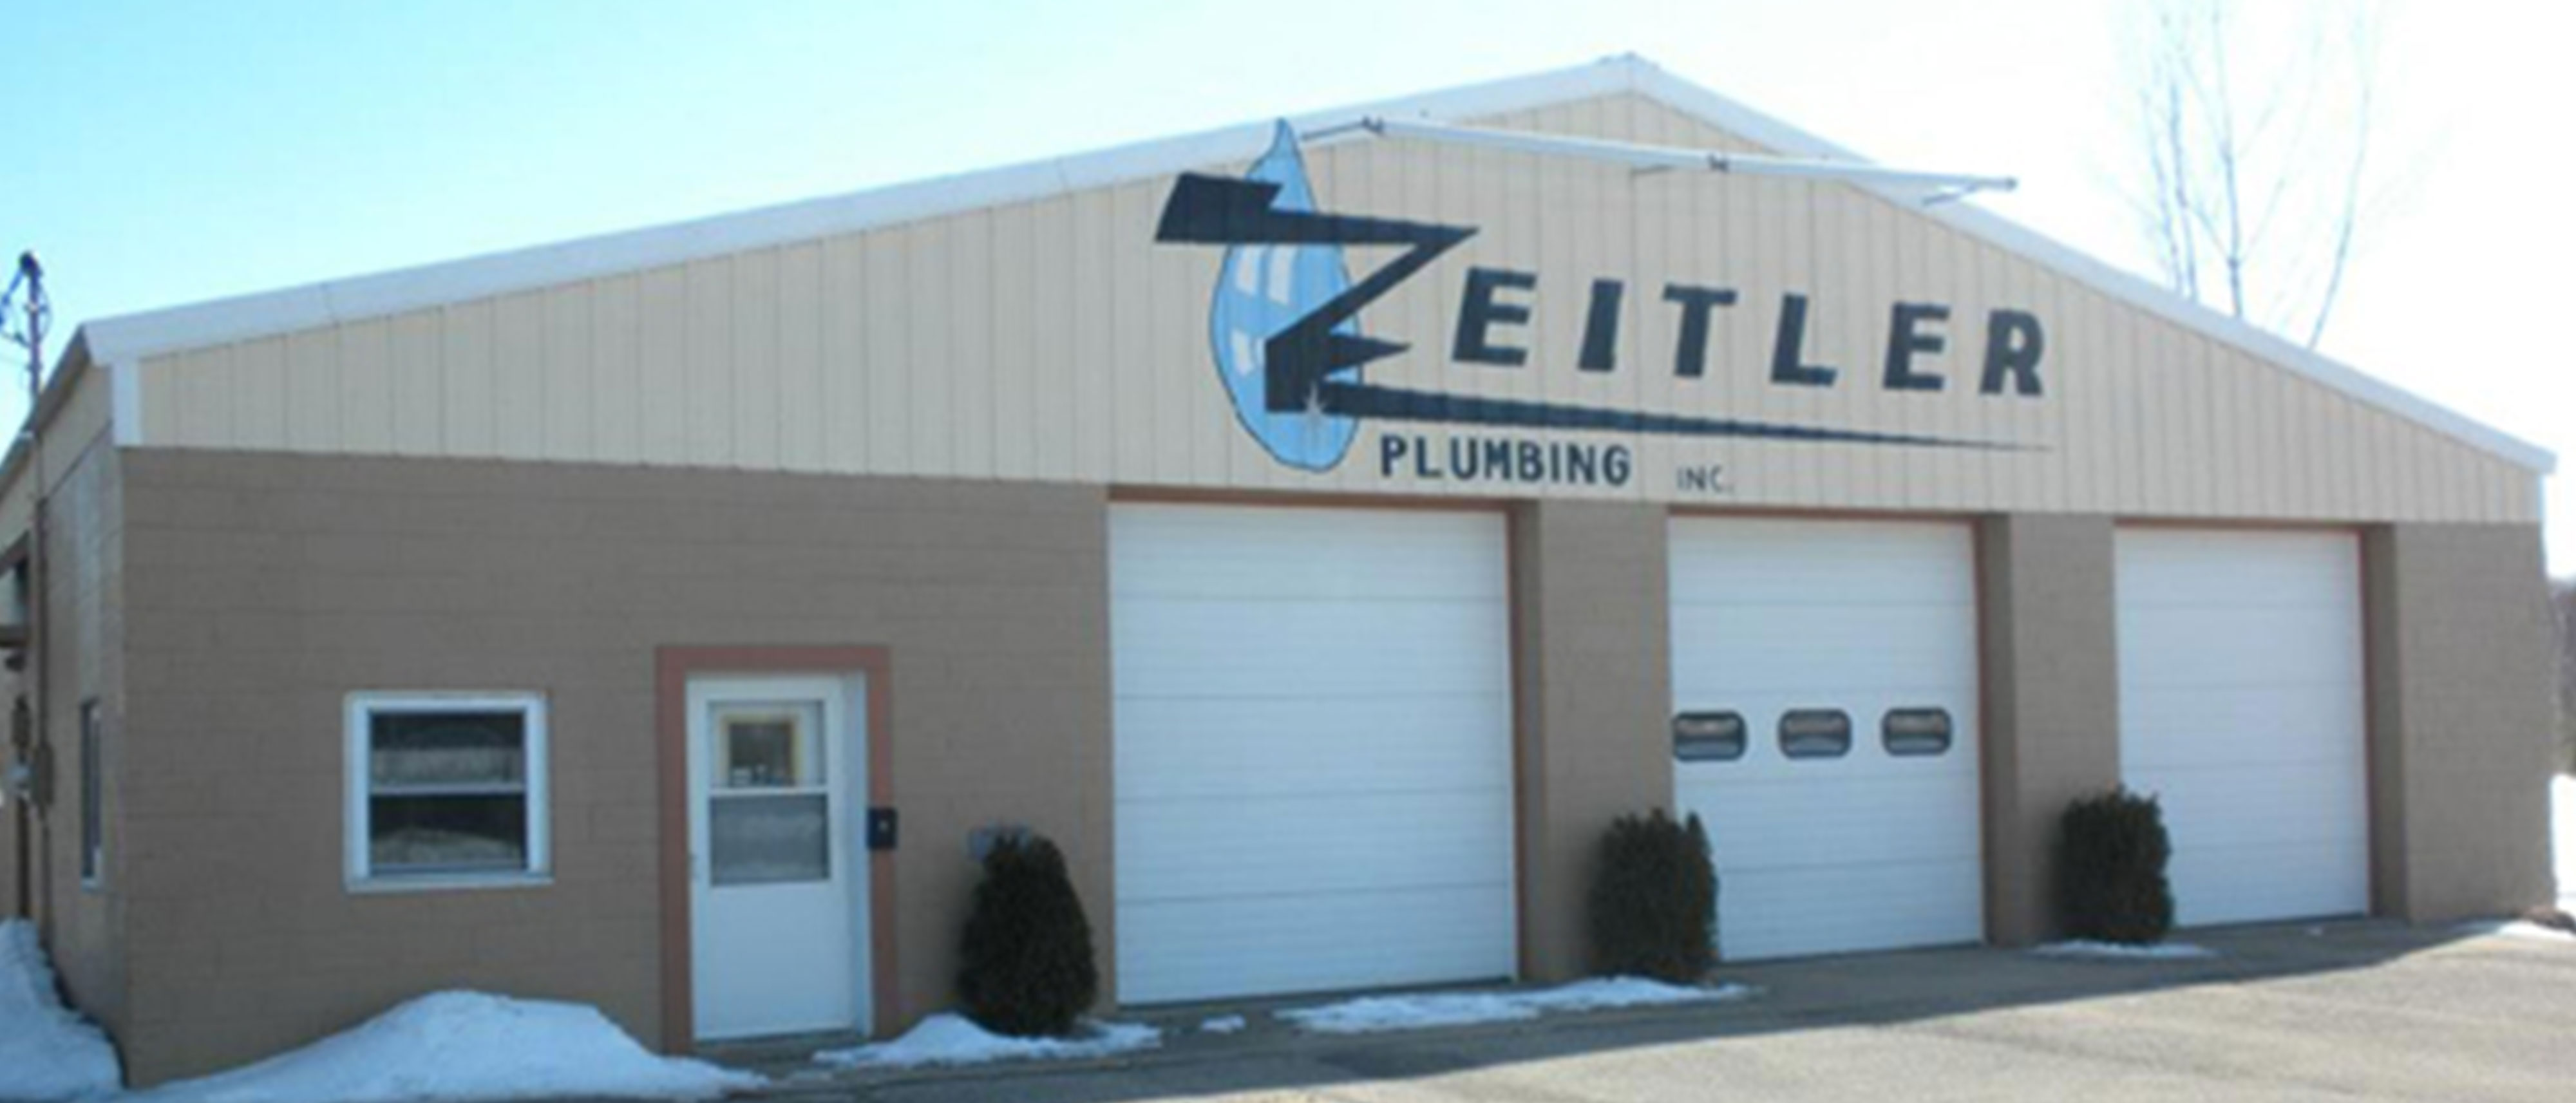 Zeitler Plumbing Office